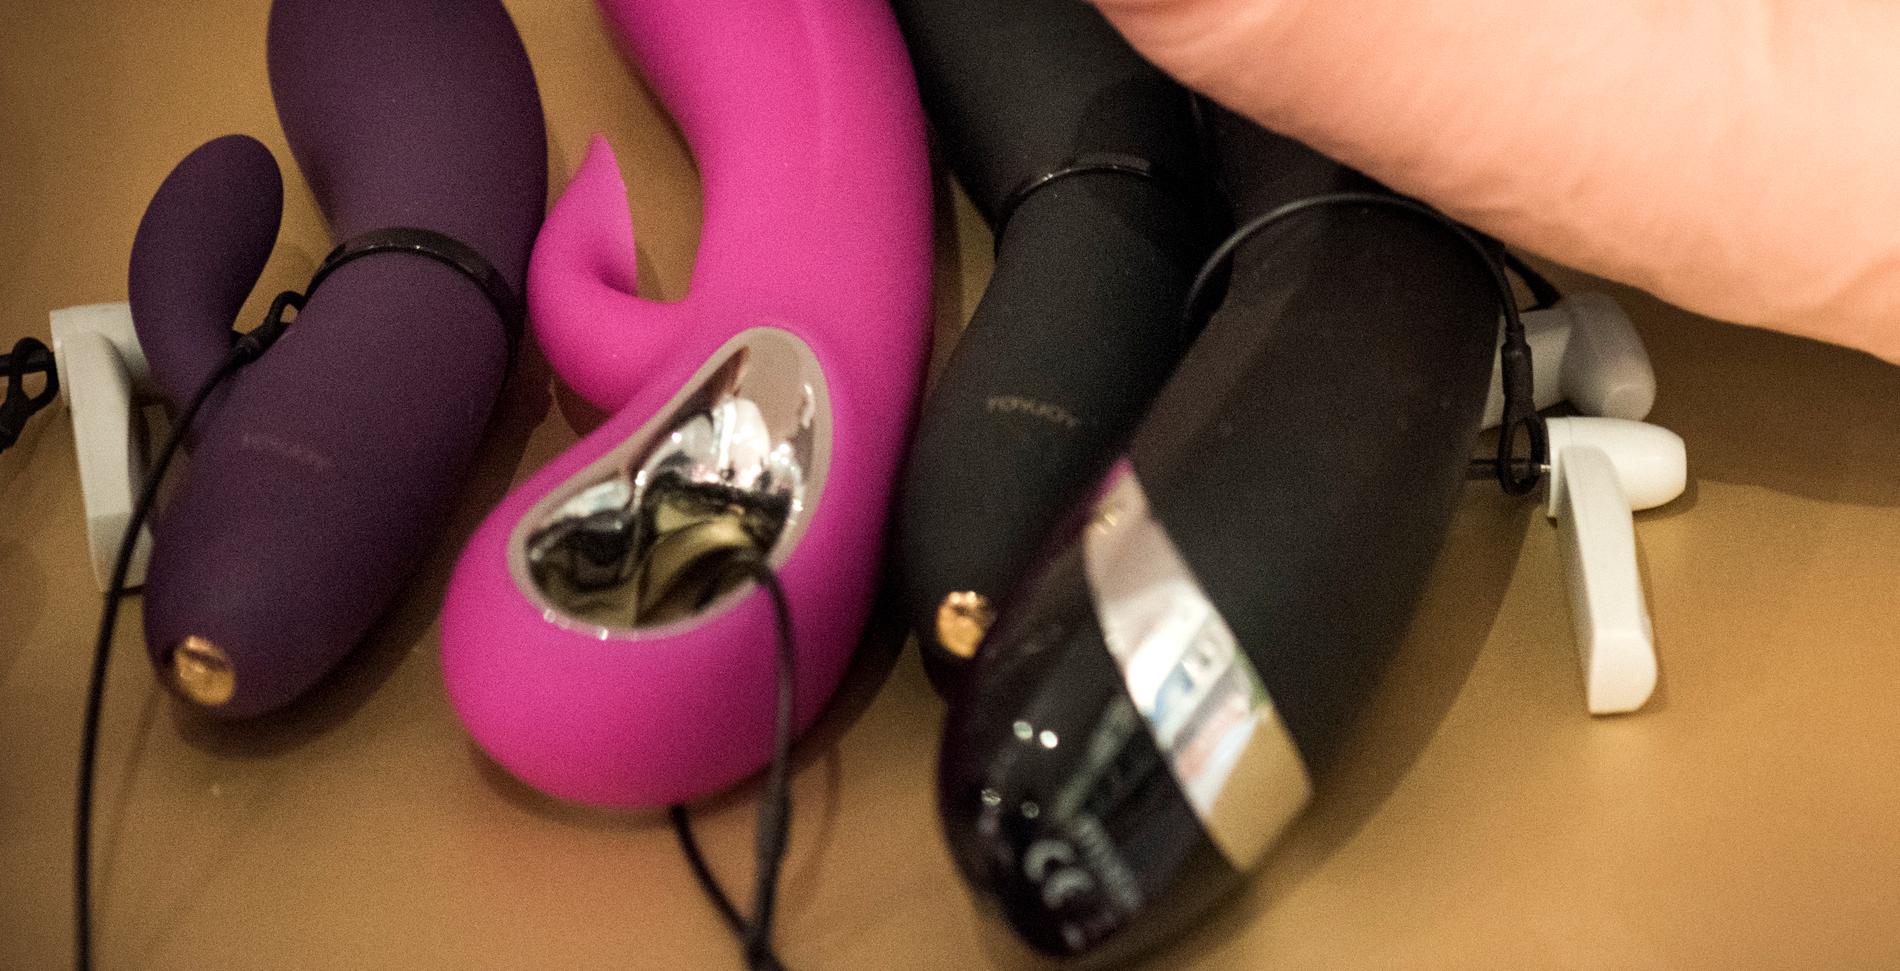 Ett e-handelsföretag i Heby kommun som säljer sexleksaker och potensmedel hotas av vite sedan kommunen noterat att vissa varor saknar svensk märkning.